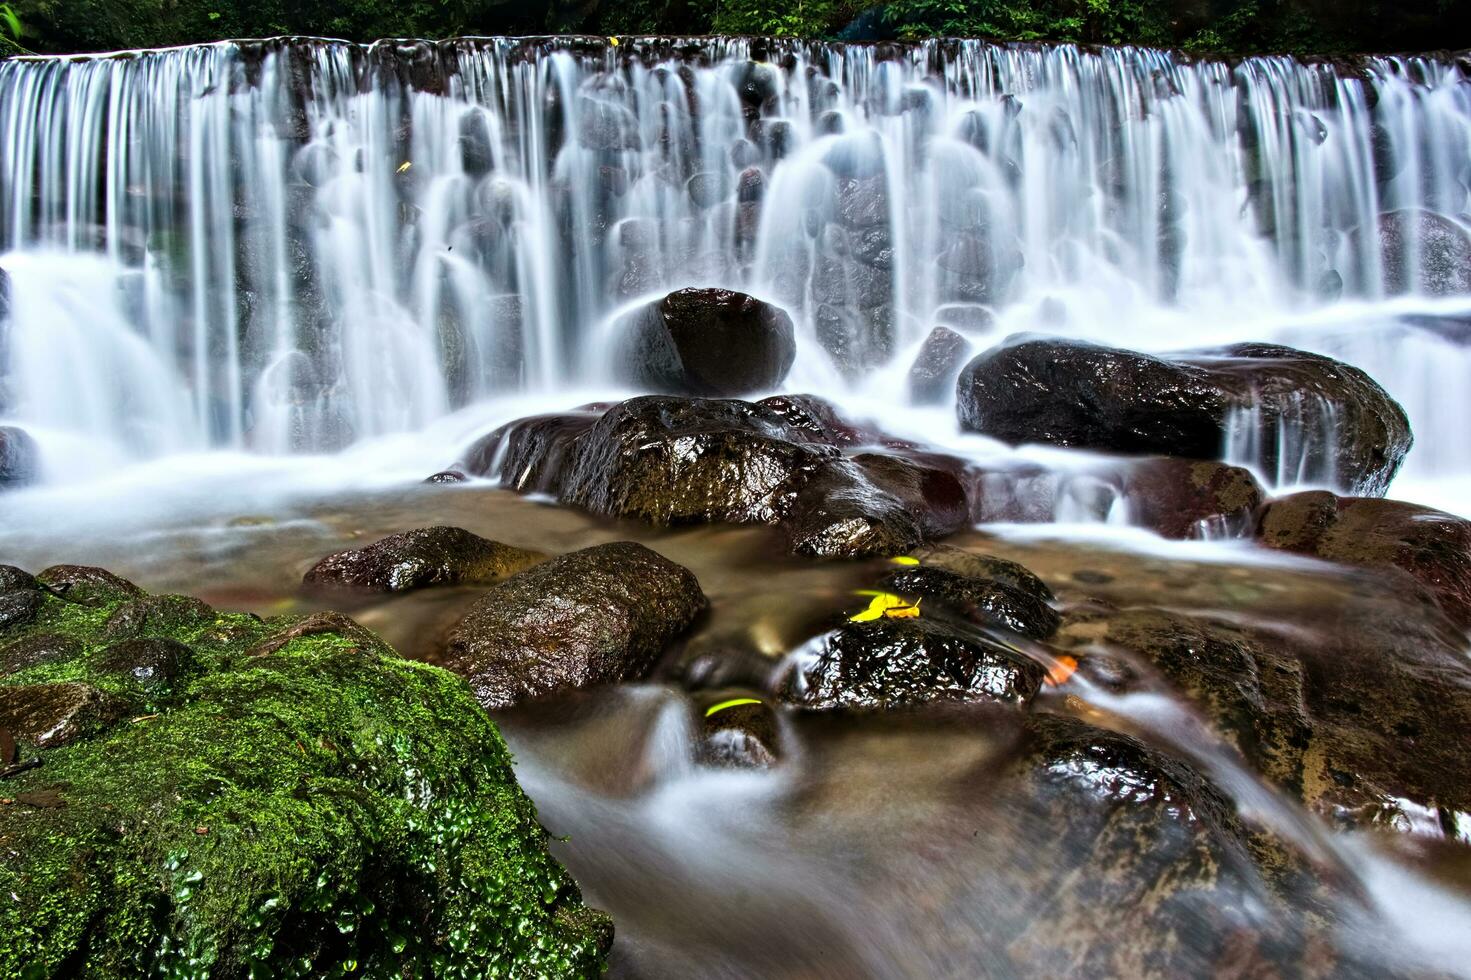 schön Aussicht von Wasserfall, Wasser fließen im Fluss mit Wasserfall Aussicht foto